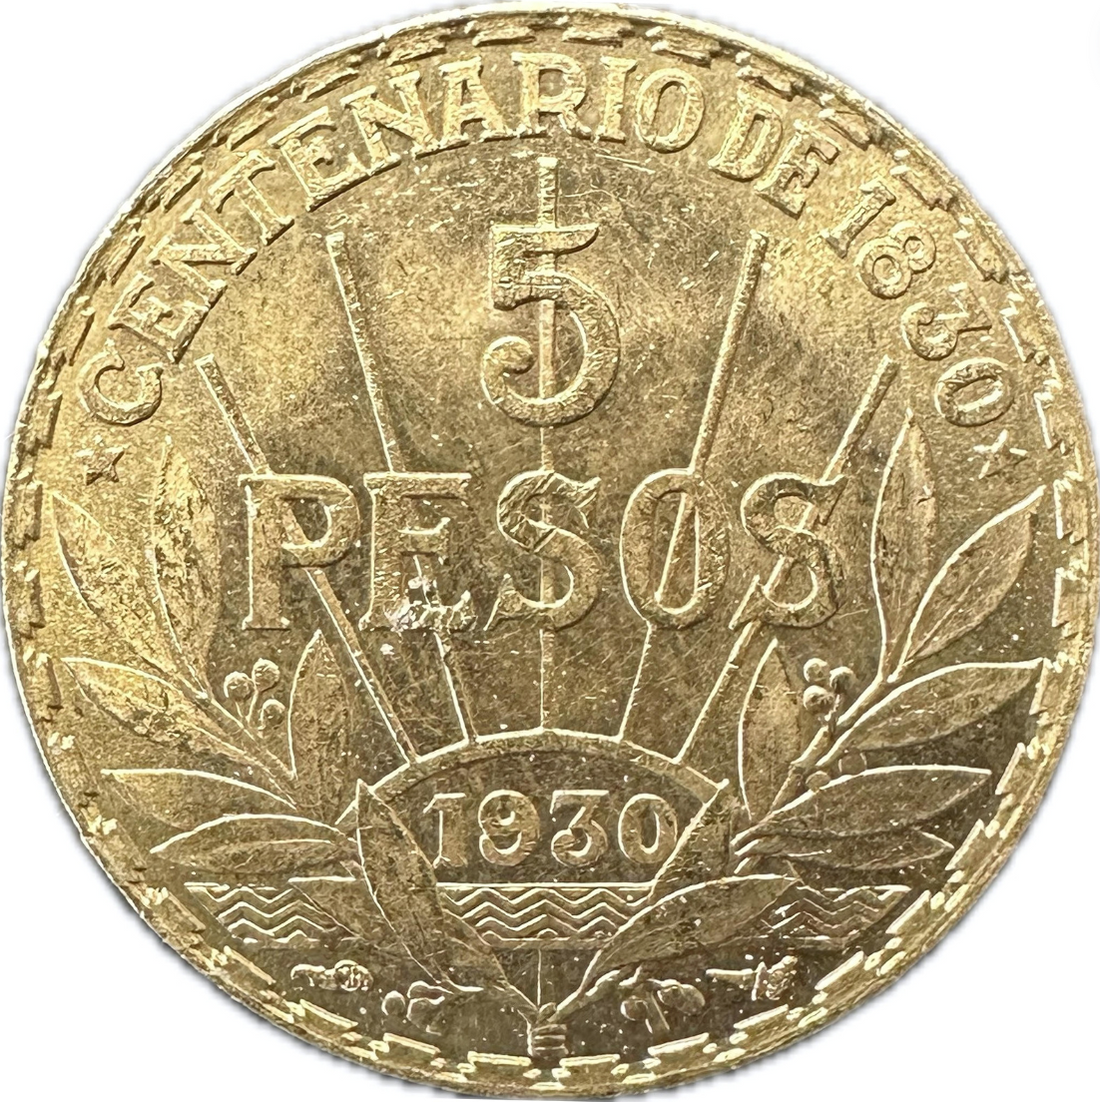 1930 URUGUAY 5 PESOS 1/4 oz Gold Coin - OZB